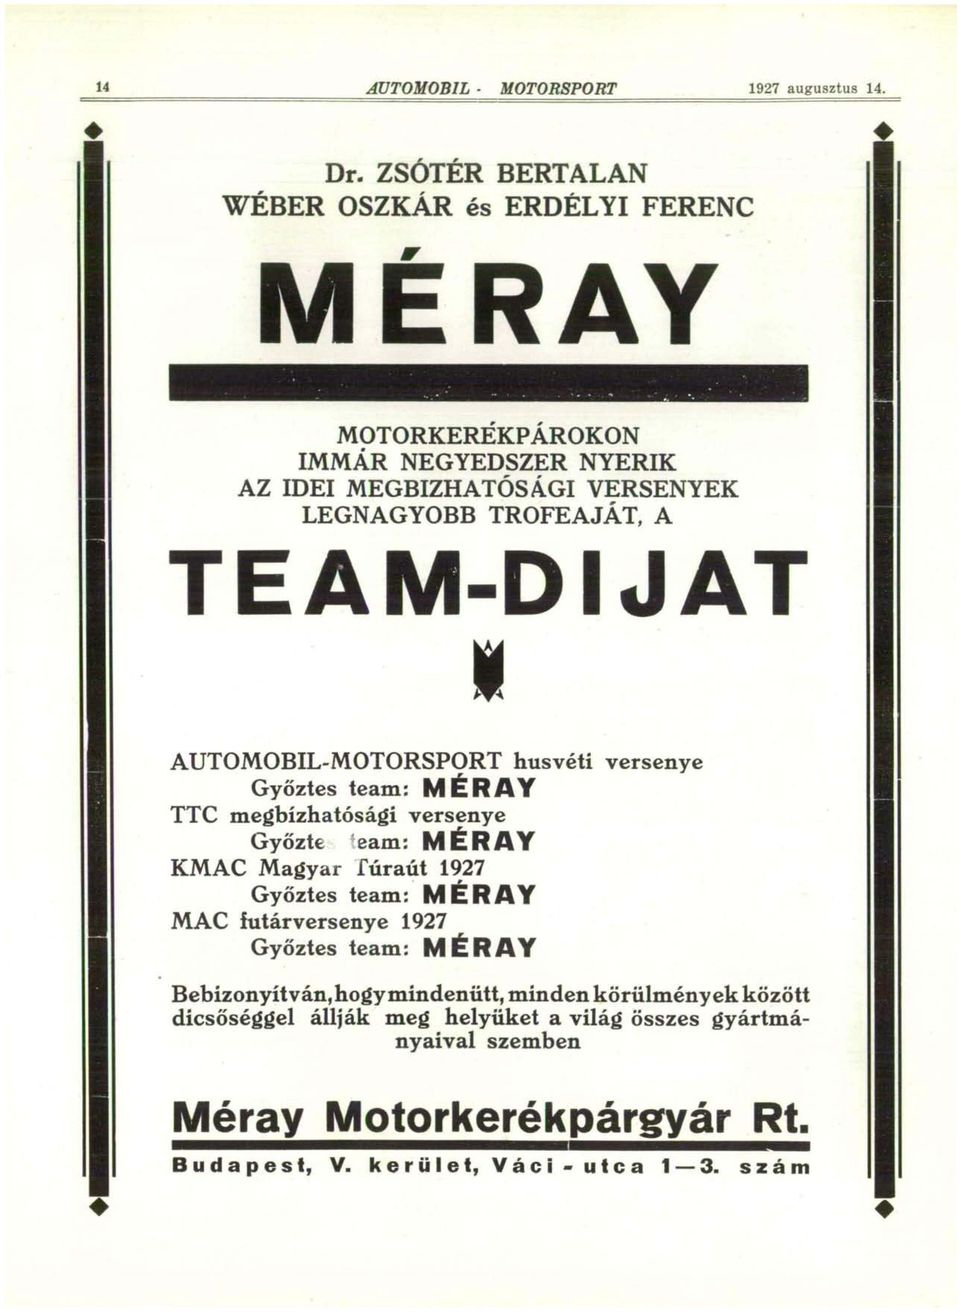 TEAM-DIJAT I AUTOMOBIL-MOTORSPORT húsvéti versenye Győztes team: MÉRAY TTC megbízhatósági versenye Győzte team: MÉRAY KMAC Magyar fúraút 1927 Győztes